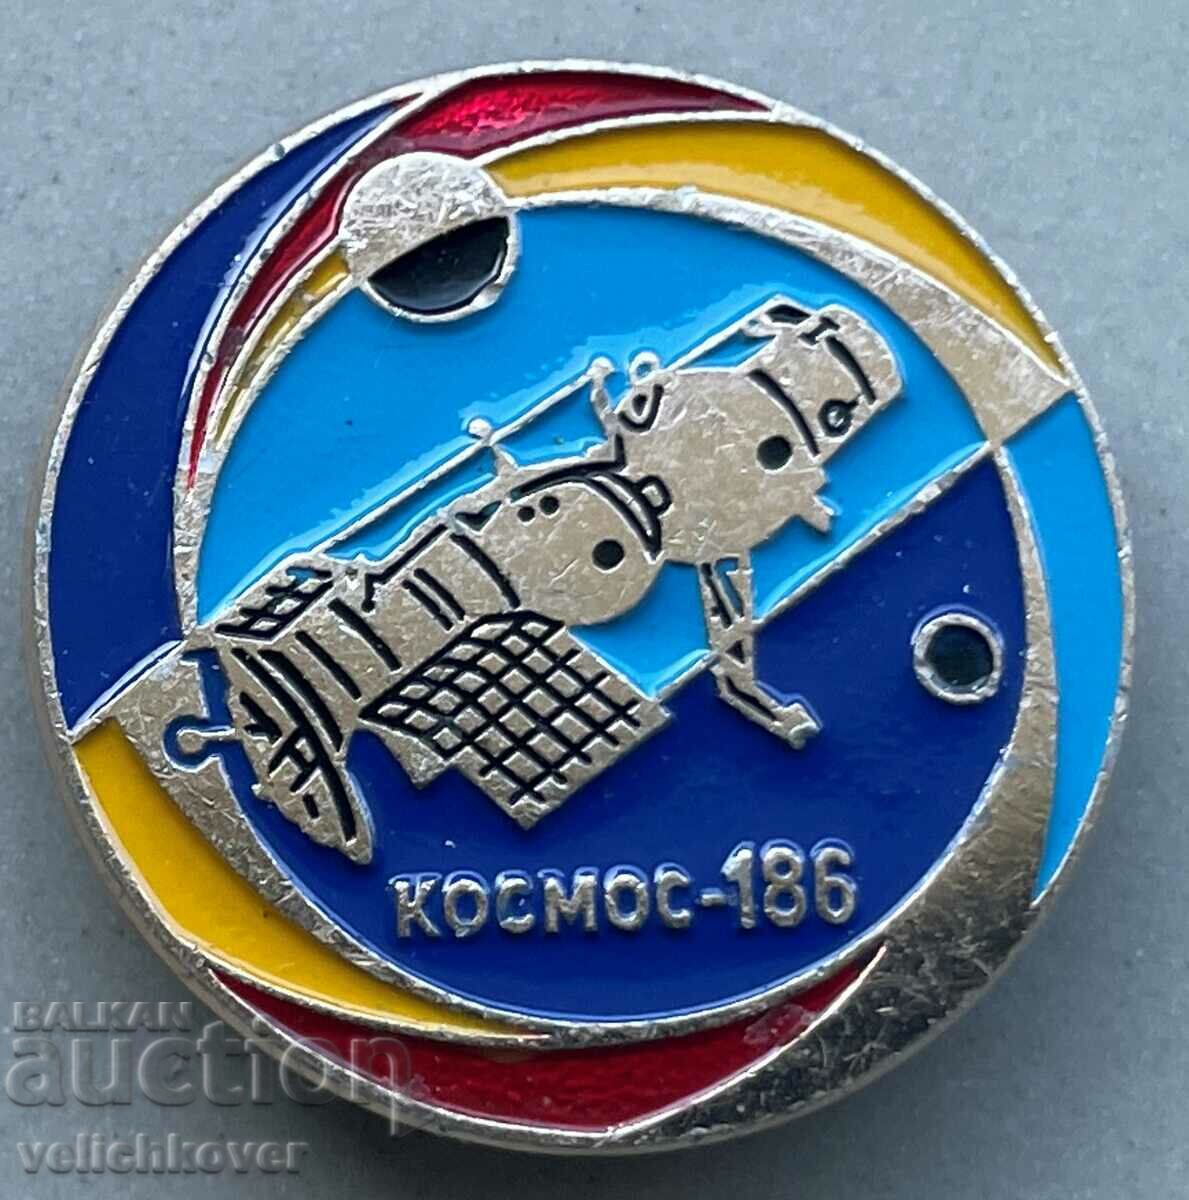 34008 Nava spațială cu semn spațial URSS Cosmos 186